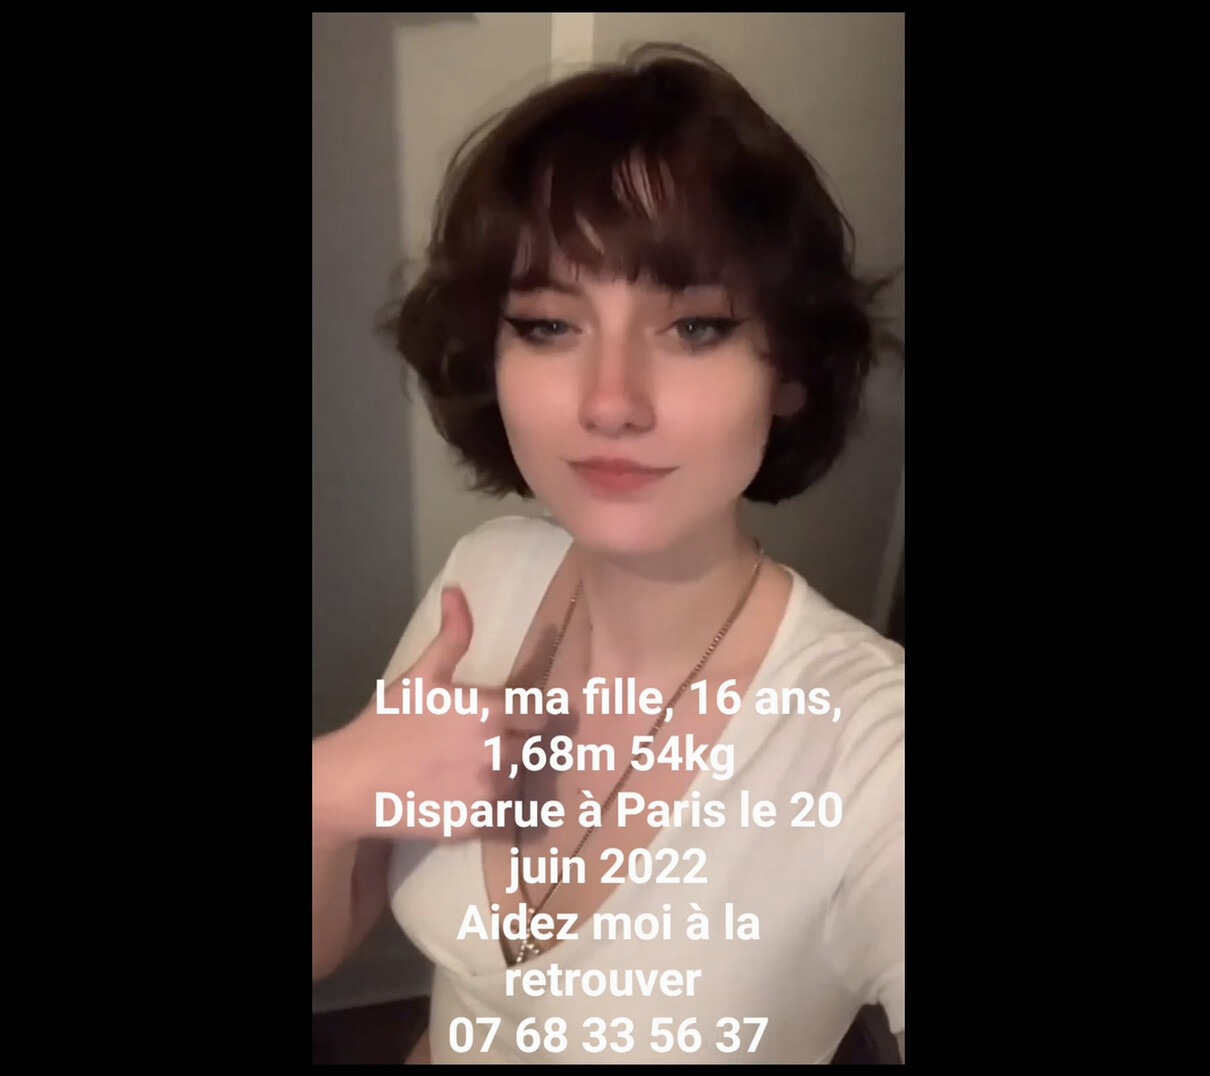 Paris: disparition de Lilou, une jeune fille de 16 ans, elle se trouverait entre les Halles et le 19e arrondissement